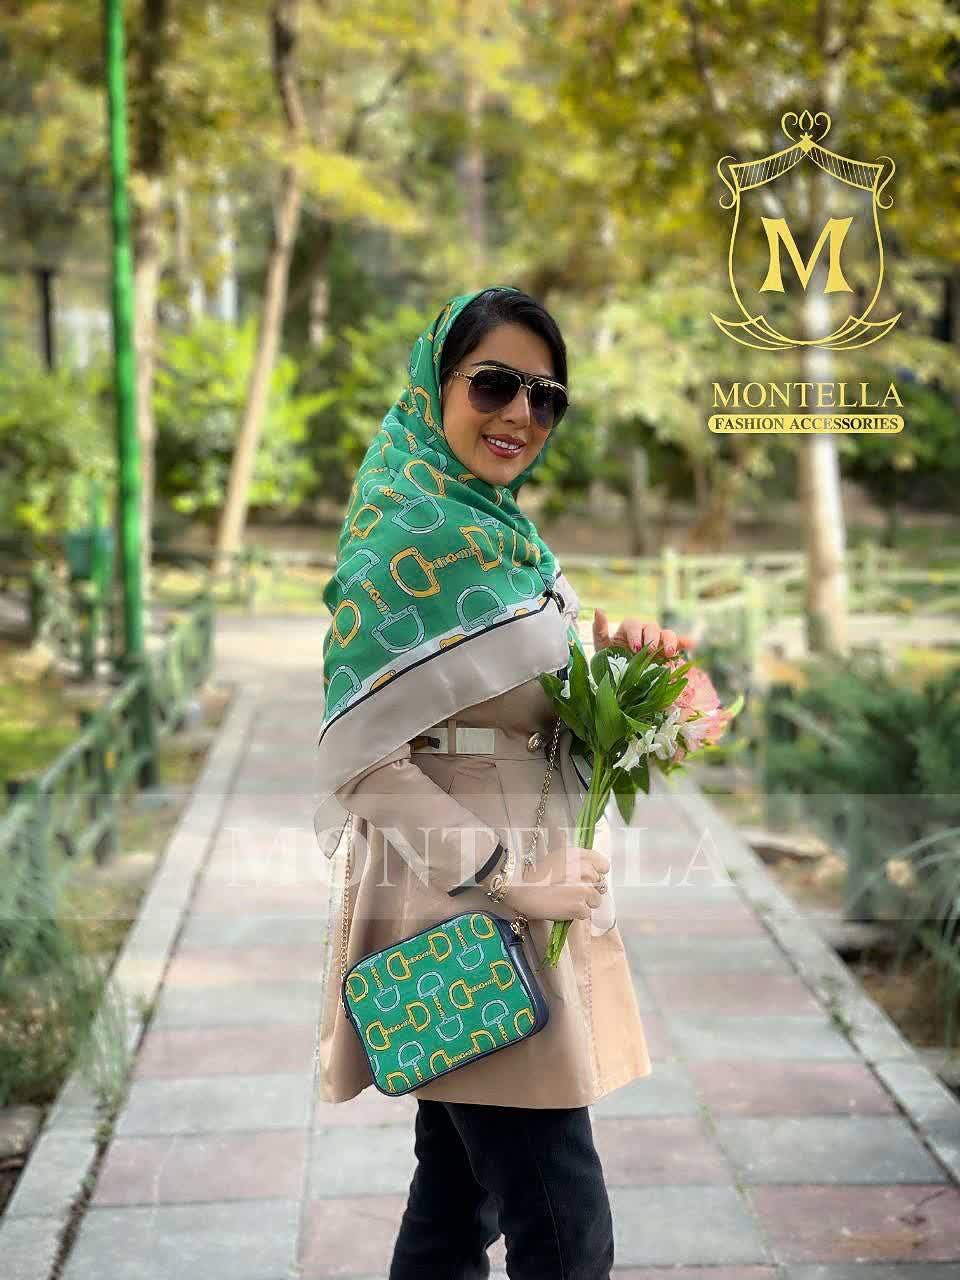 ست کیف و روسری زنانه طرح نلین رنگ سبز با کیف کوچک کیفیت عالی با ارسال رایگان کد mo423